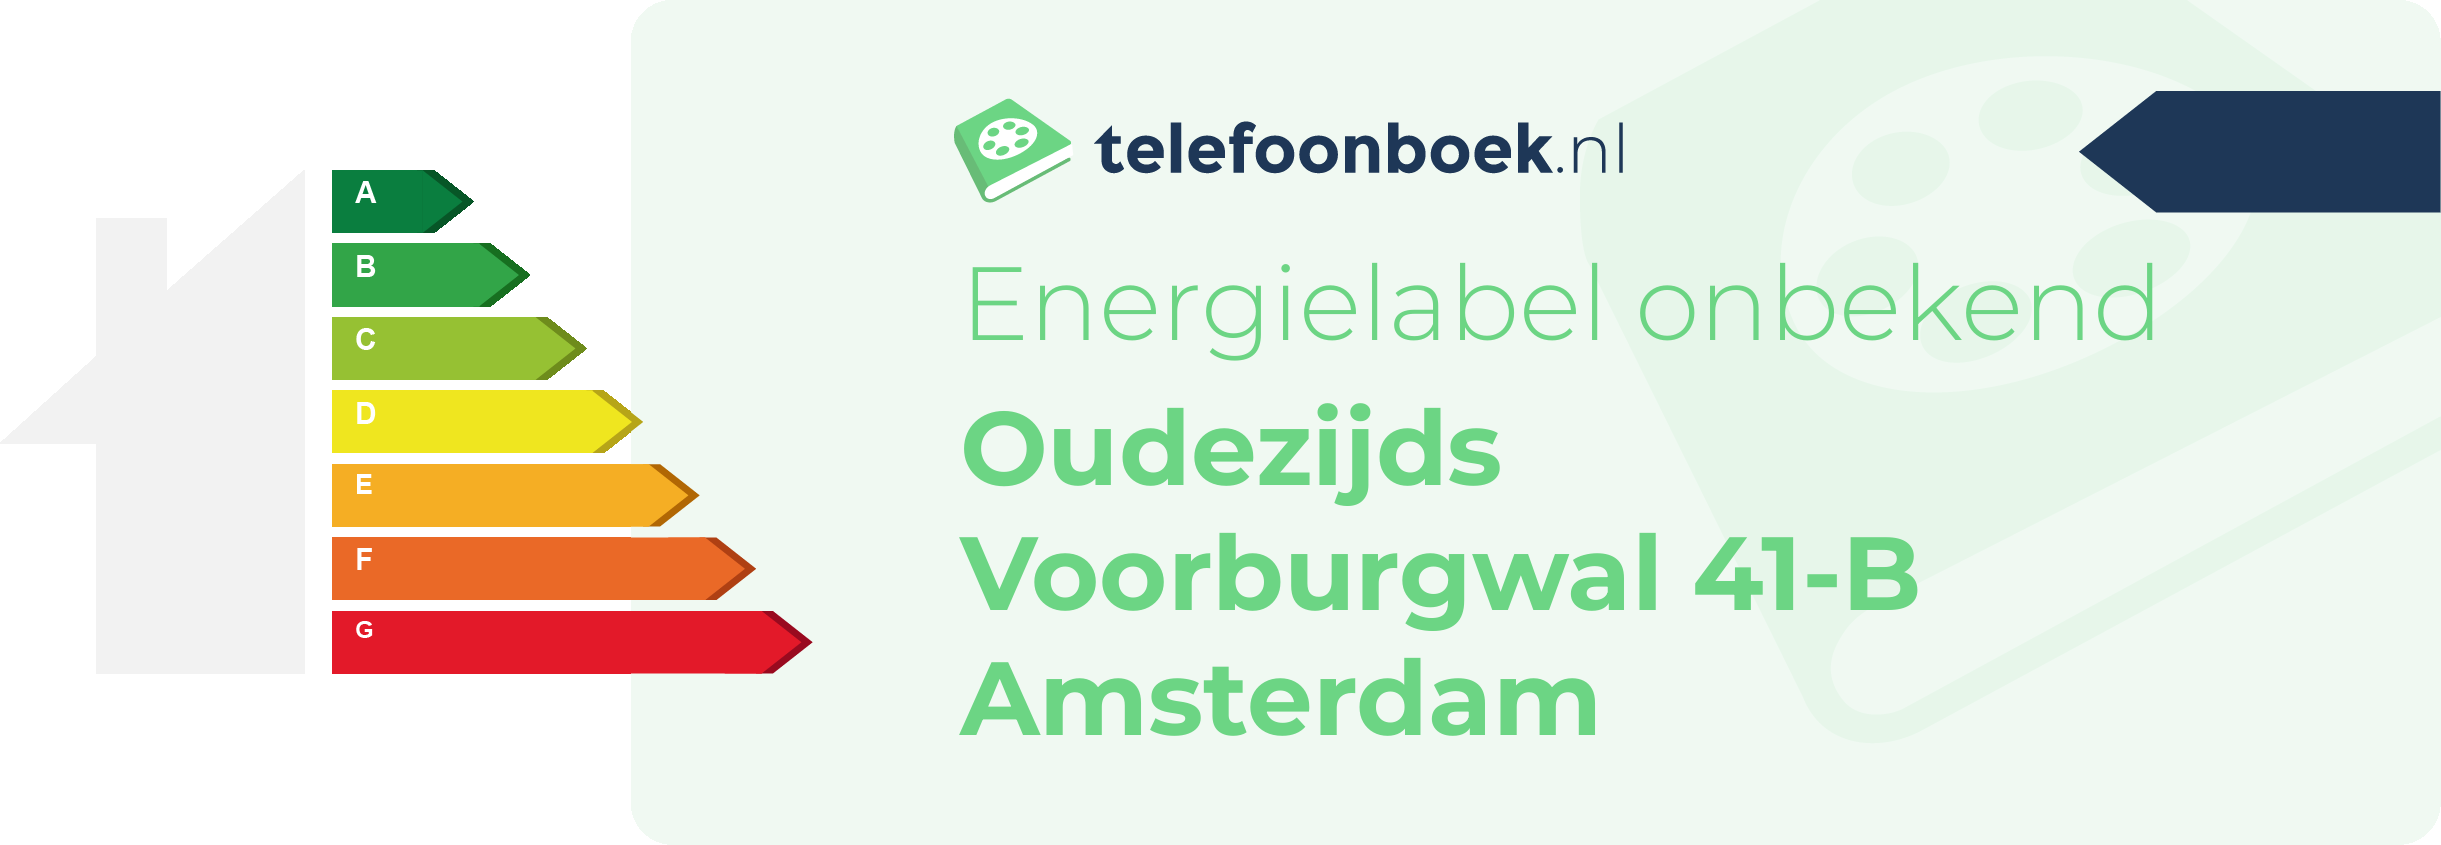 Energielabel Oudezijds Voorburgwal 41-B Amsterdam